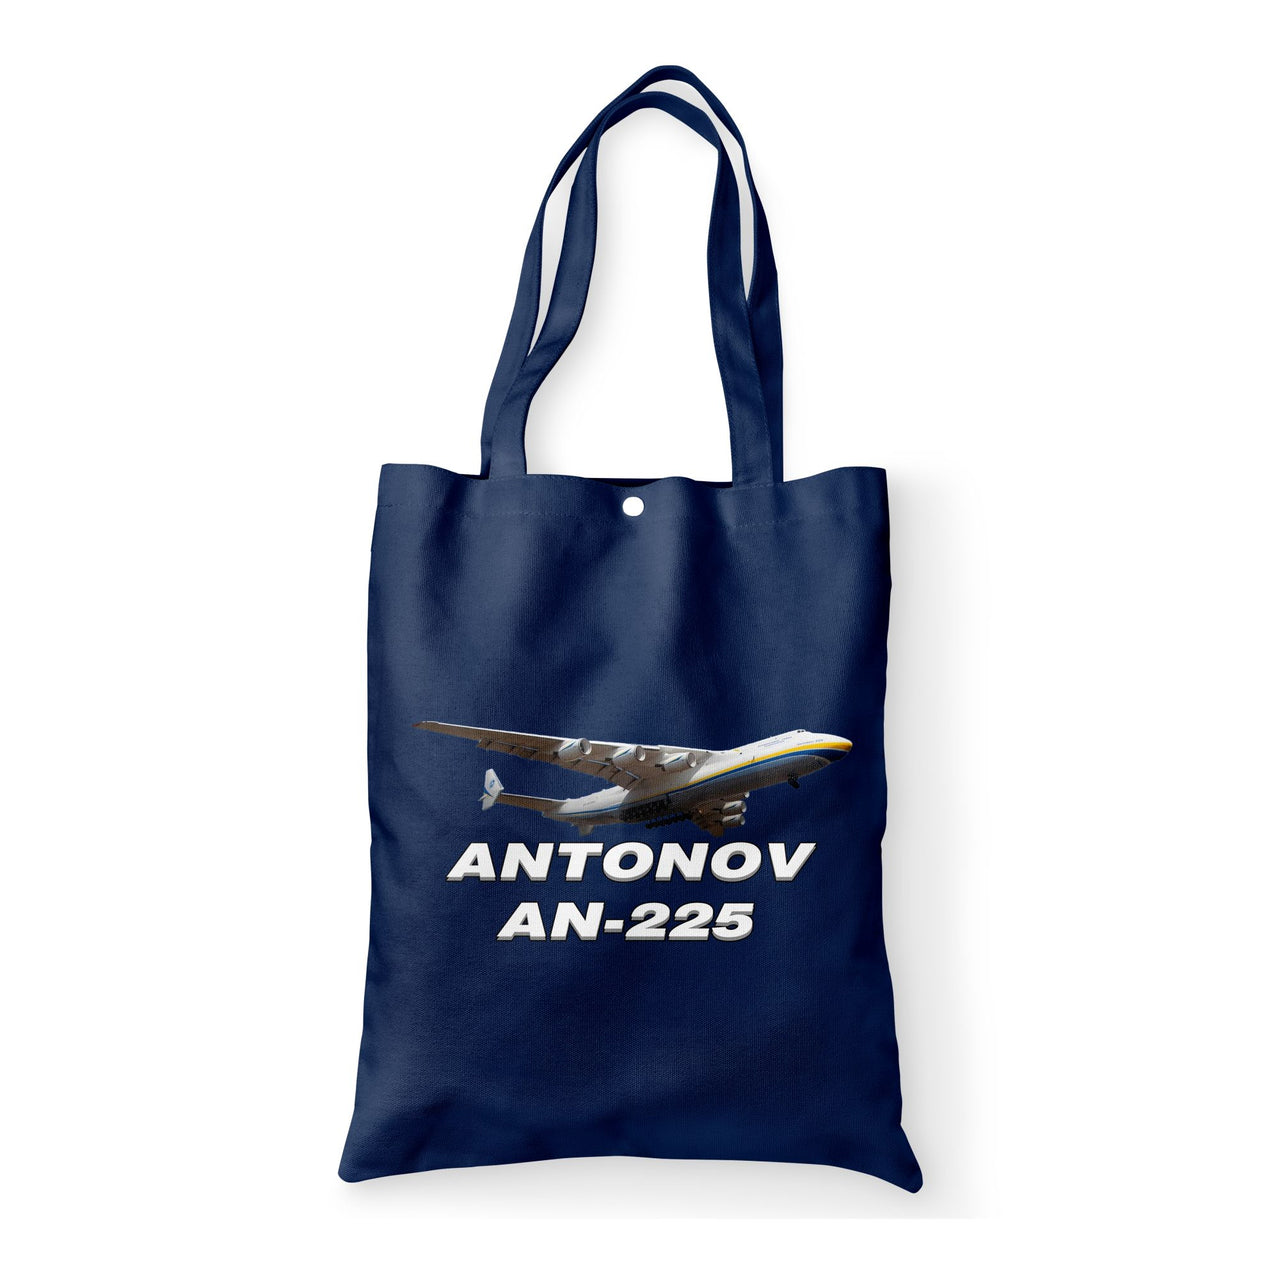 Antonov AN-225 (15) Designed Tote Bags